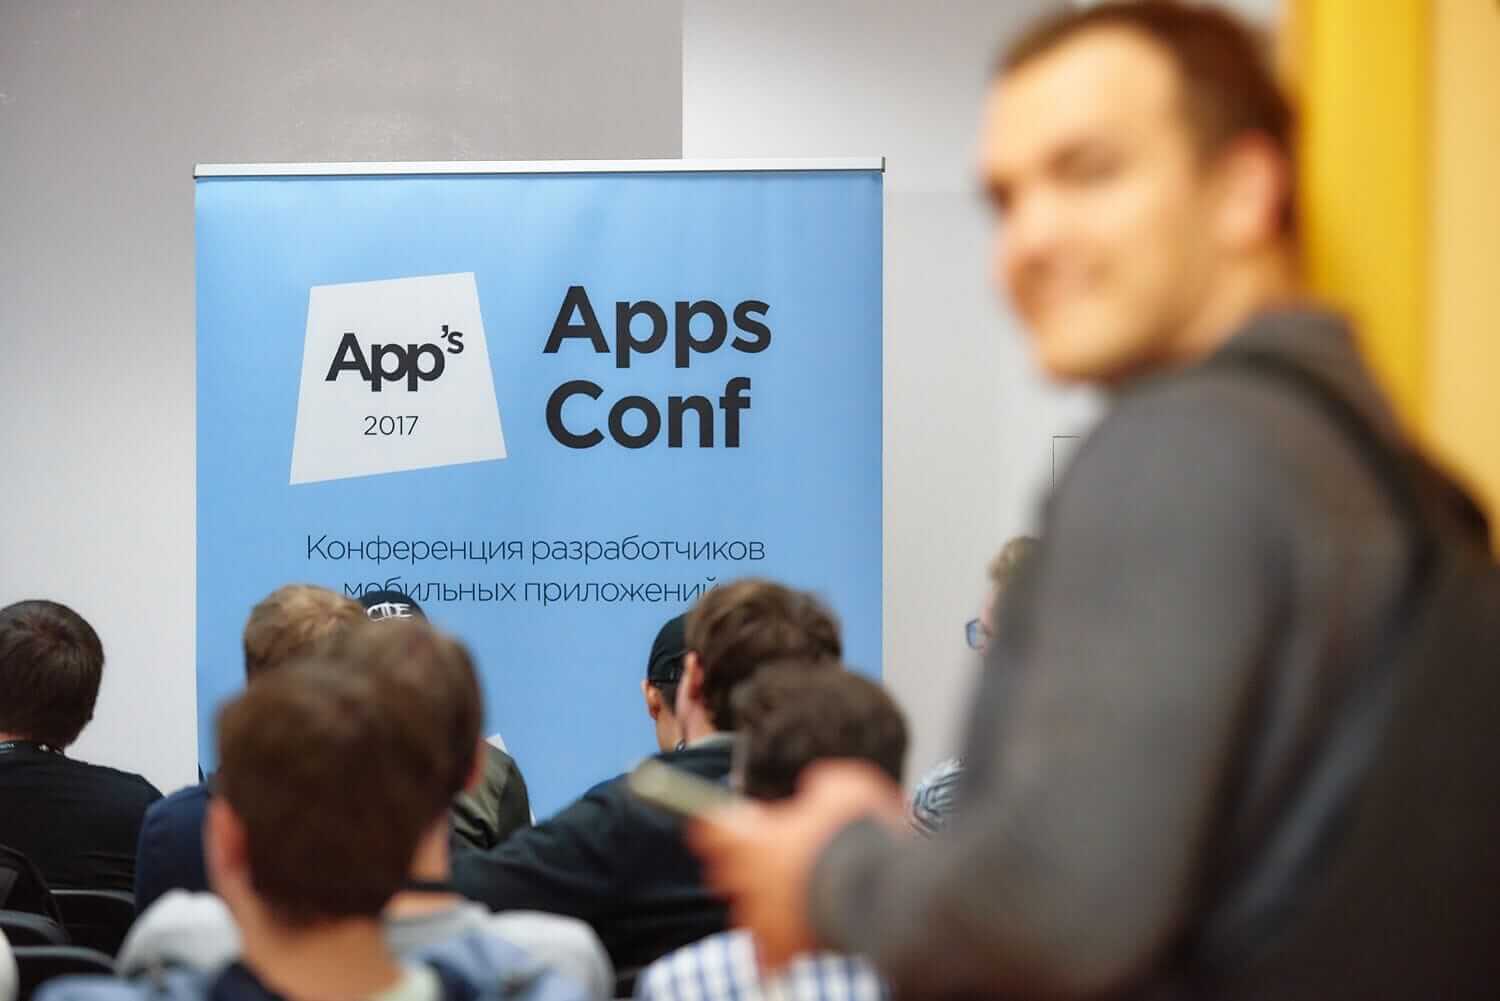 Анонс AppsConf: 2 дня прикладных, хардкорных и хайповых докладов - 2